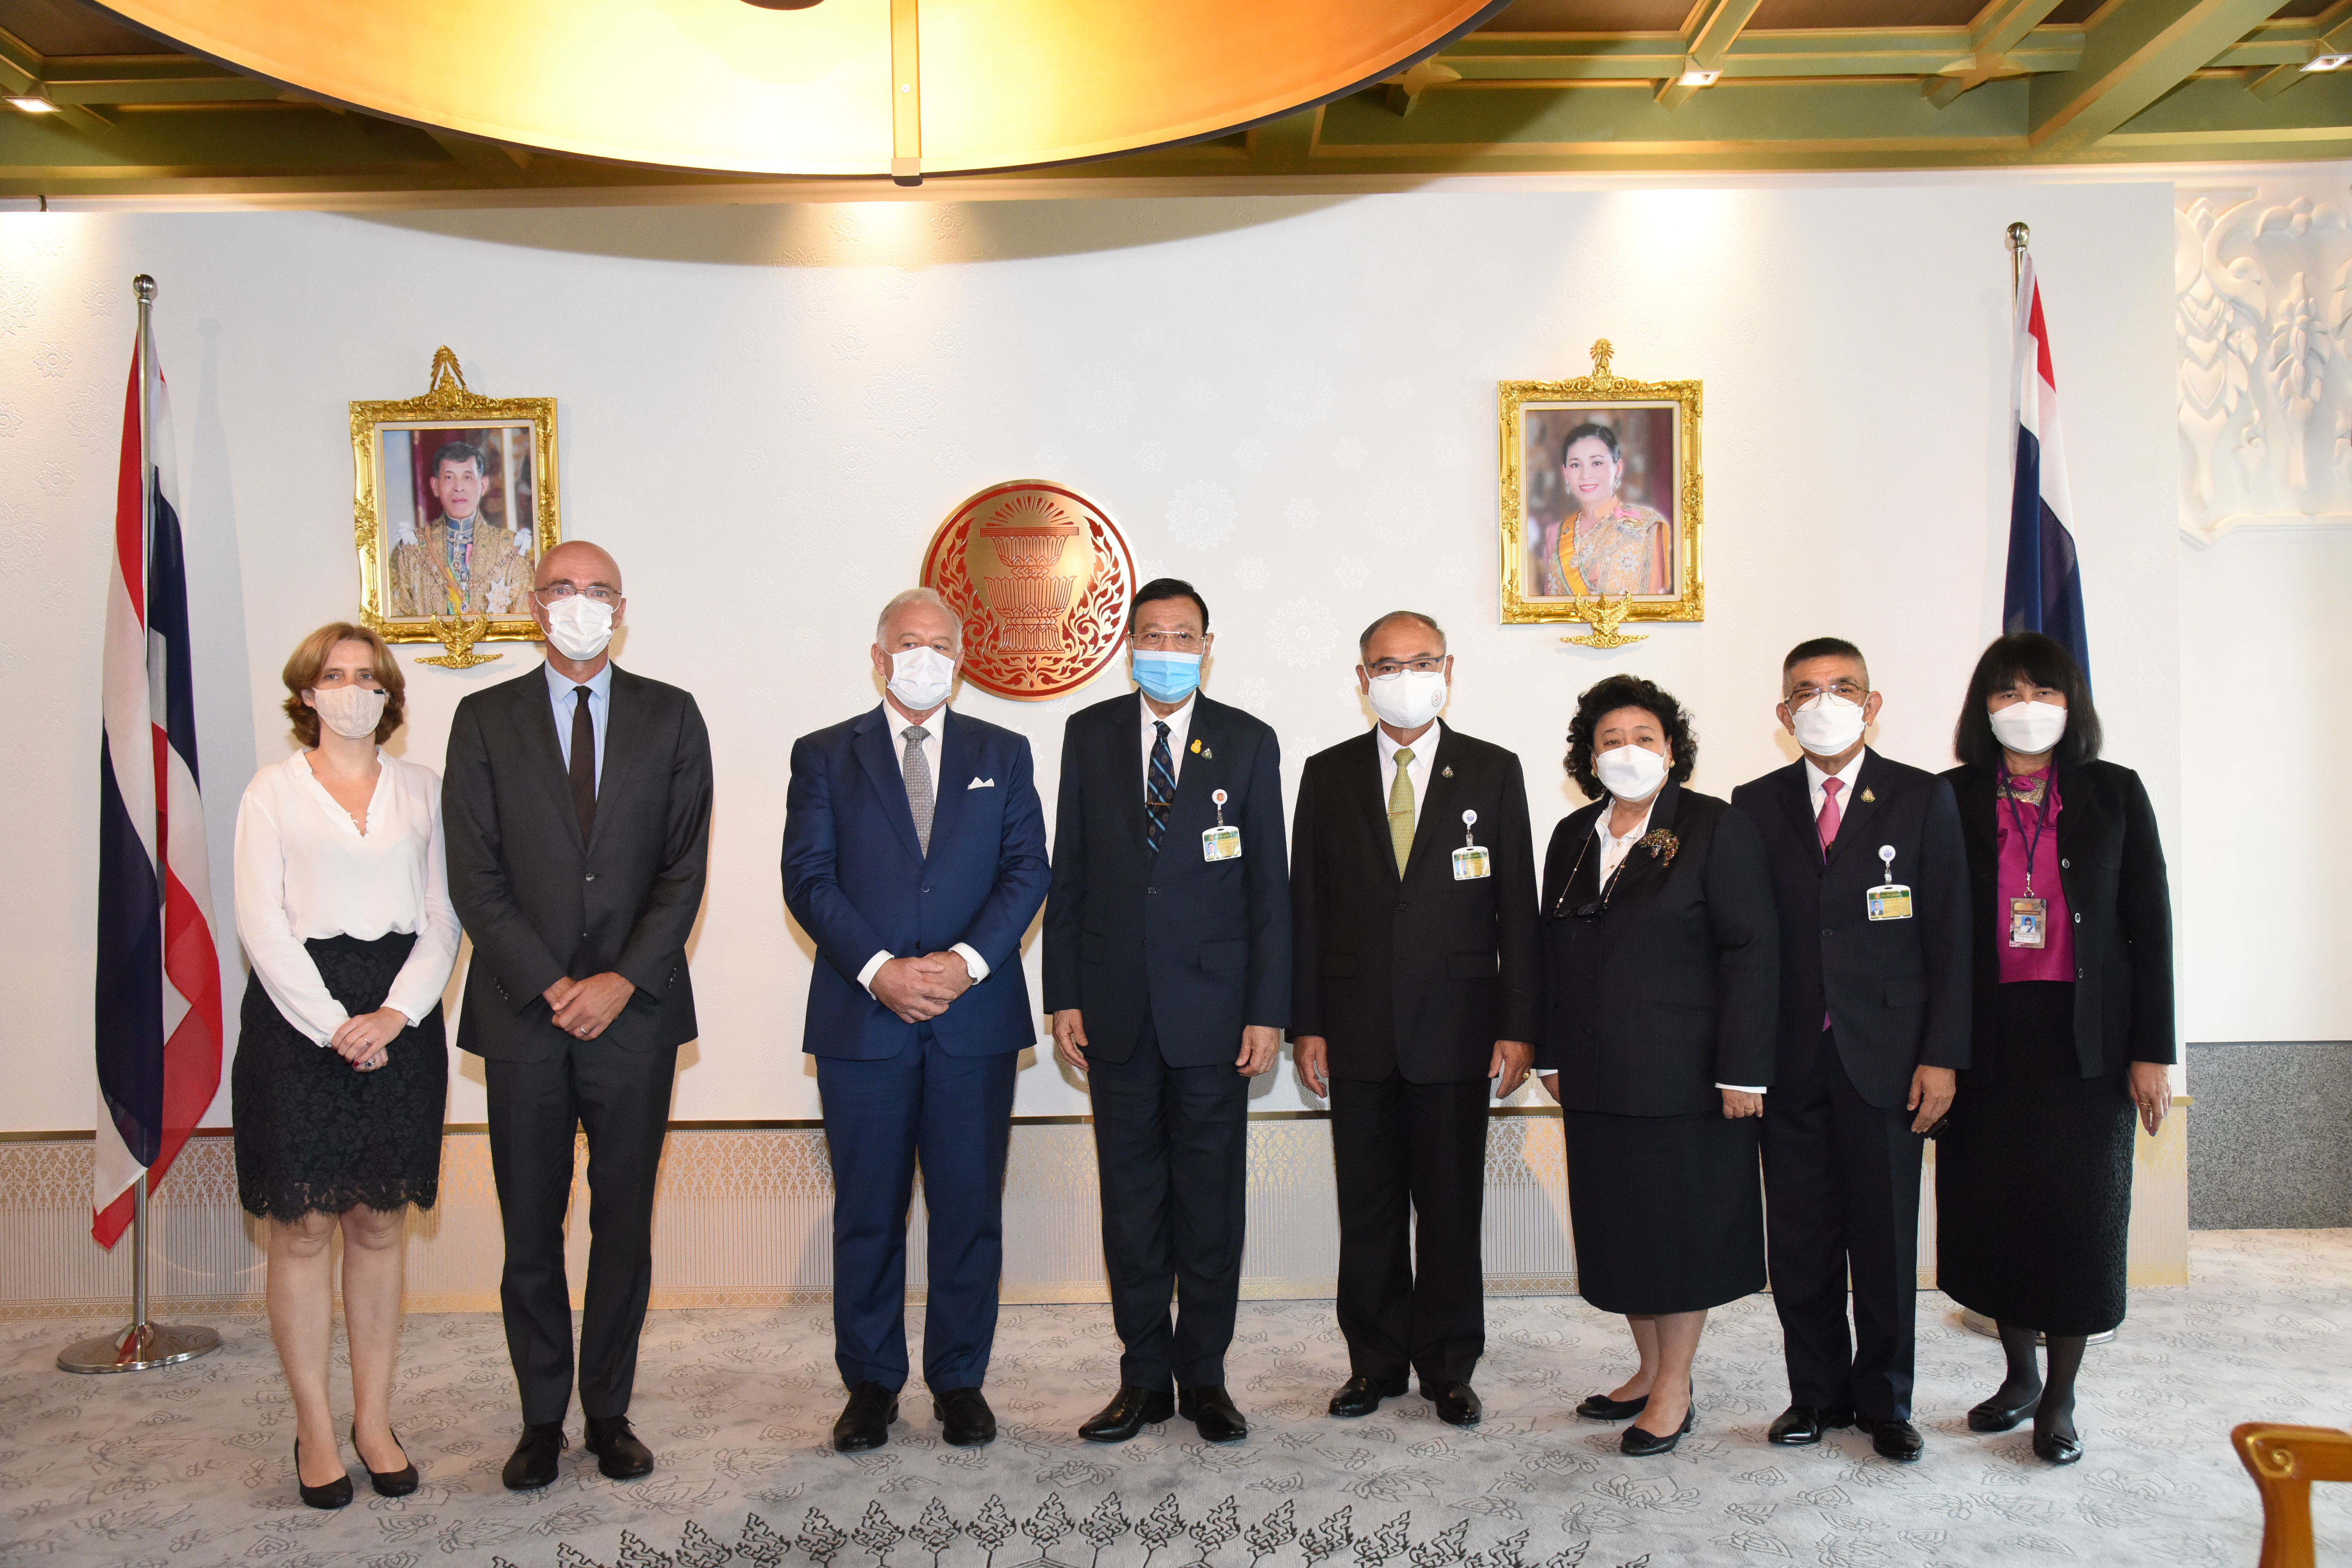 ประธานวุฒิสภาให้การรับรองเอกอัครราชทูตจากกลุ่มประเทศเบเนลักซ์ (Benelux) ประจำประเทศไทย เมื่อวันพฤหัสบดีที่ ๓ มีนาคม ๒๕๖๕) 